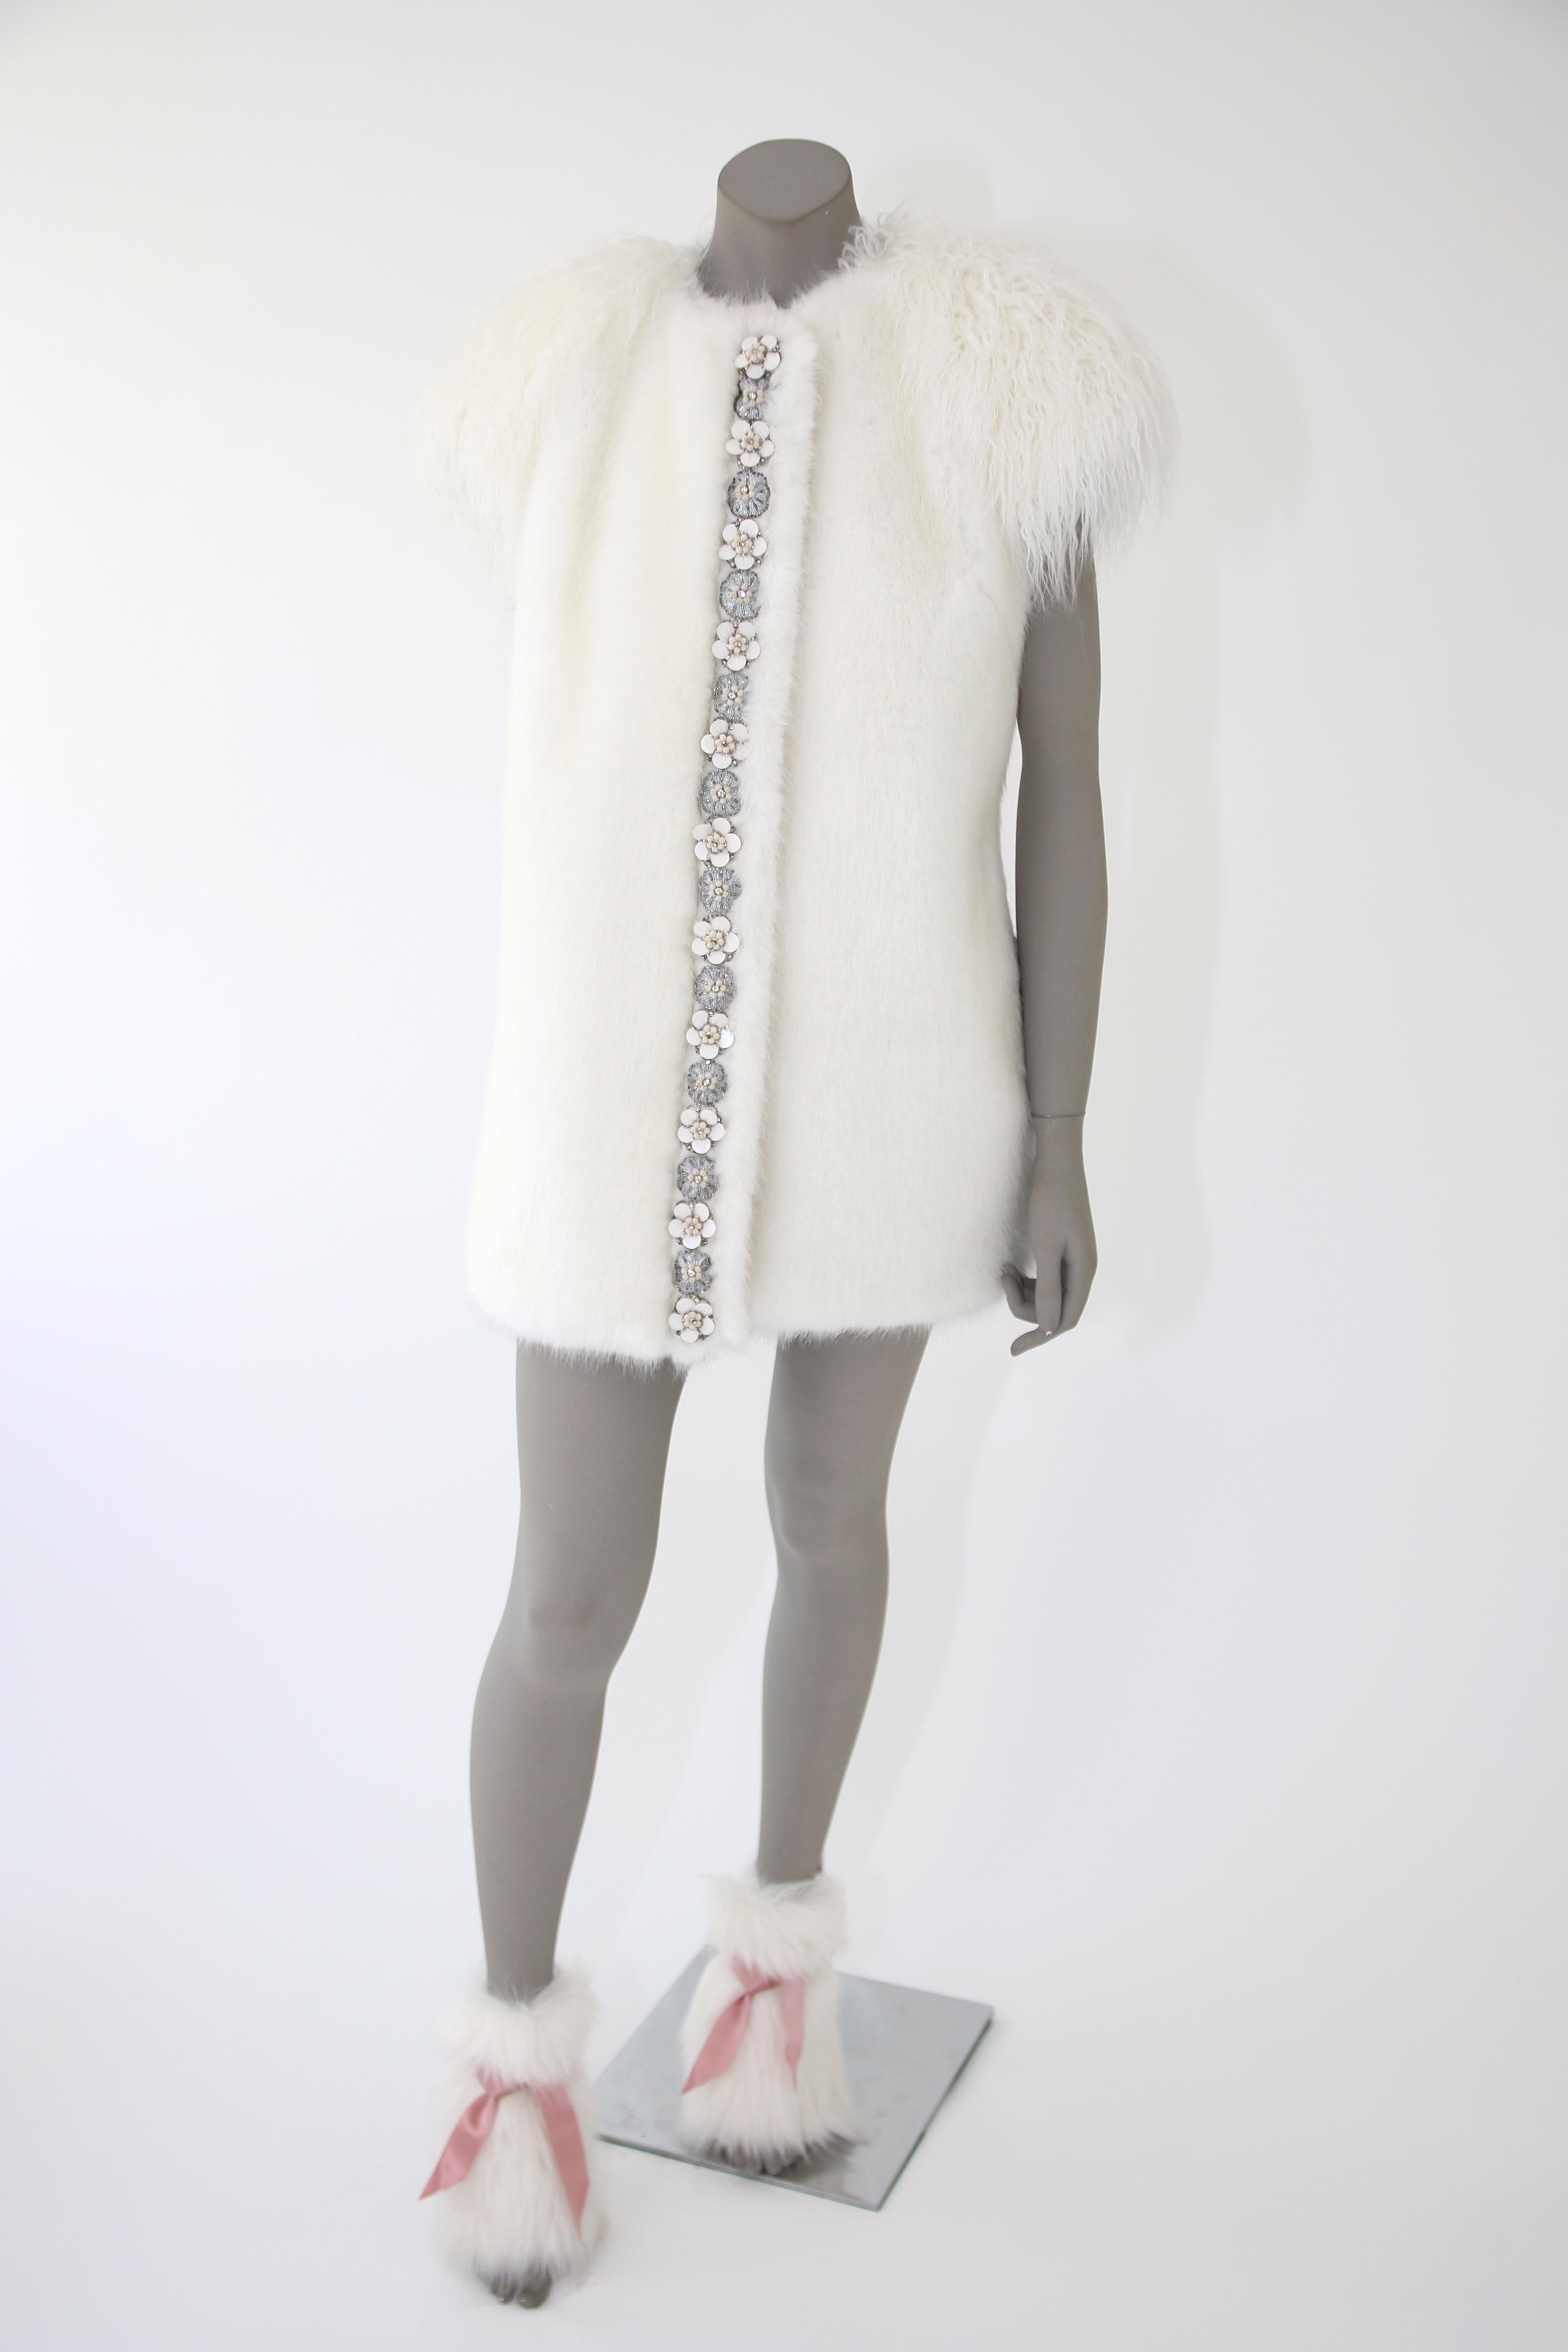 Pelush White Faux Fur Mink Vest with Details - One Size S/M For Sale 1